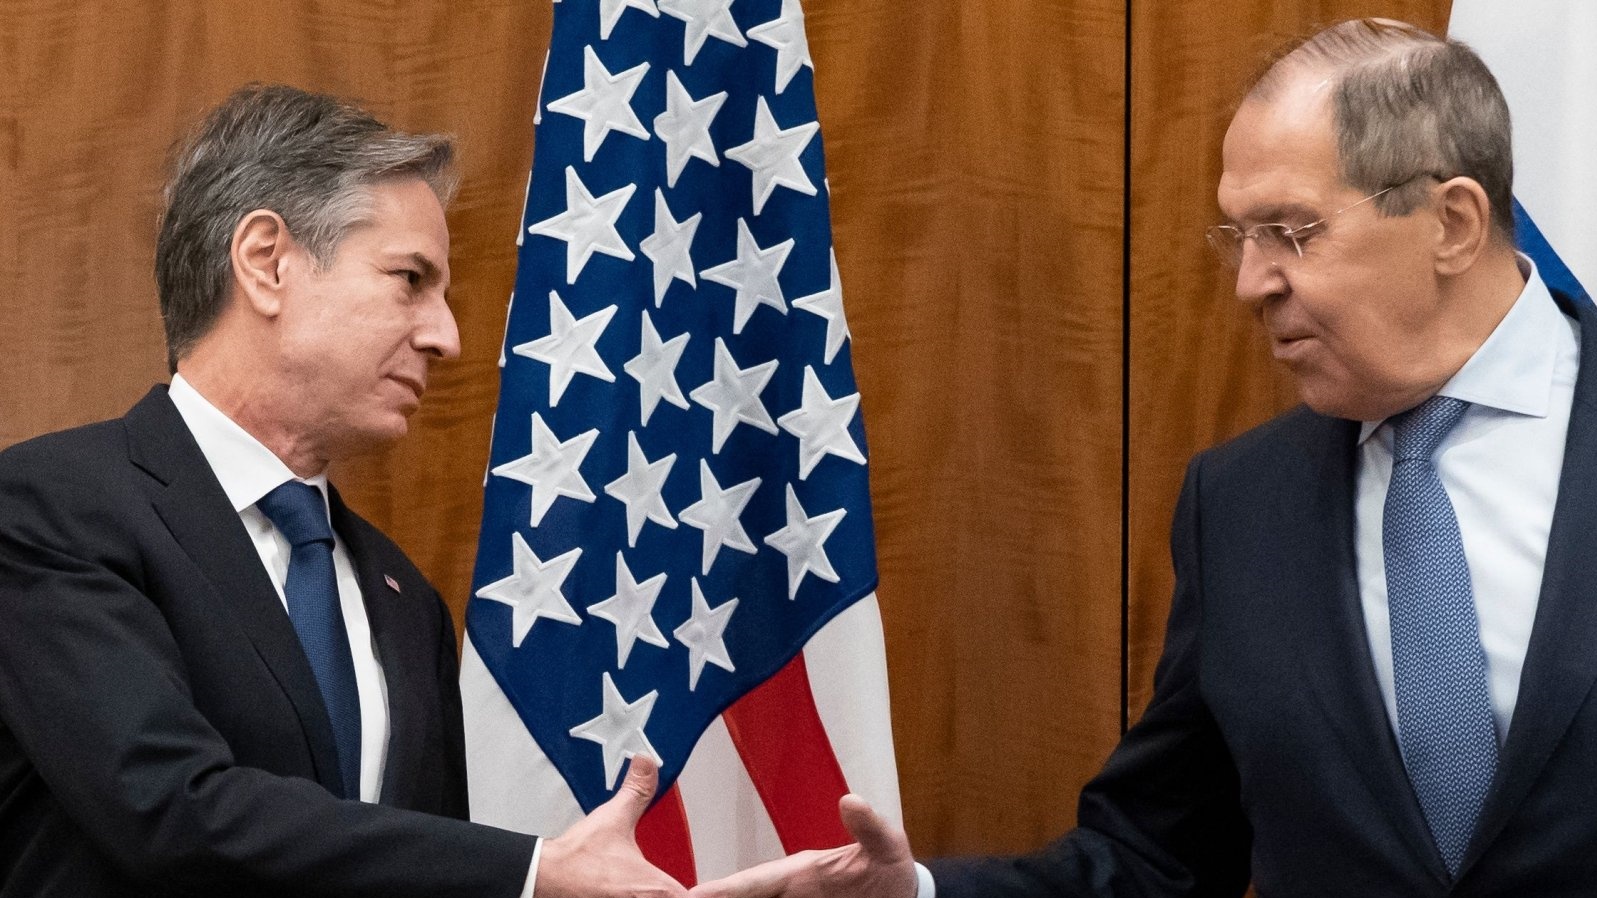 وزير الخارجية الأميركي أنتوني بلينكين (إلى اليسار) ووزير الخارجية الروسي سيرجي لافروف يتصافحان قبل اجتماعهما في جنيف، سويسرا، 21 يناير 2022.